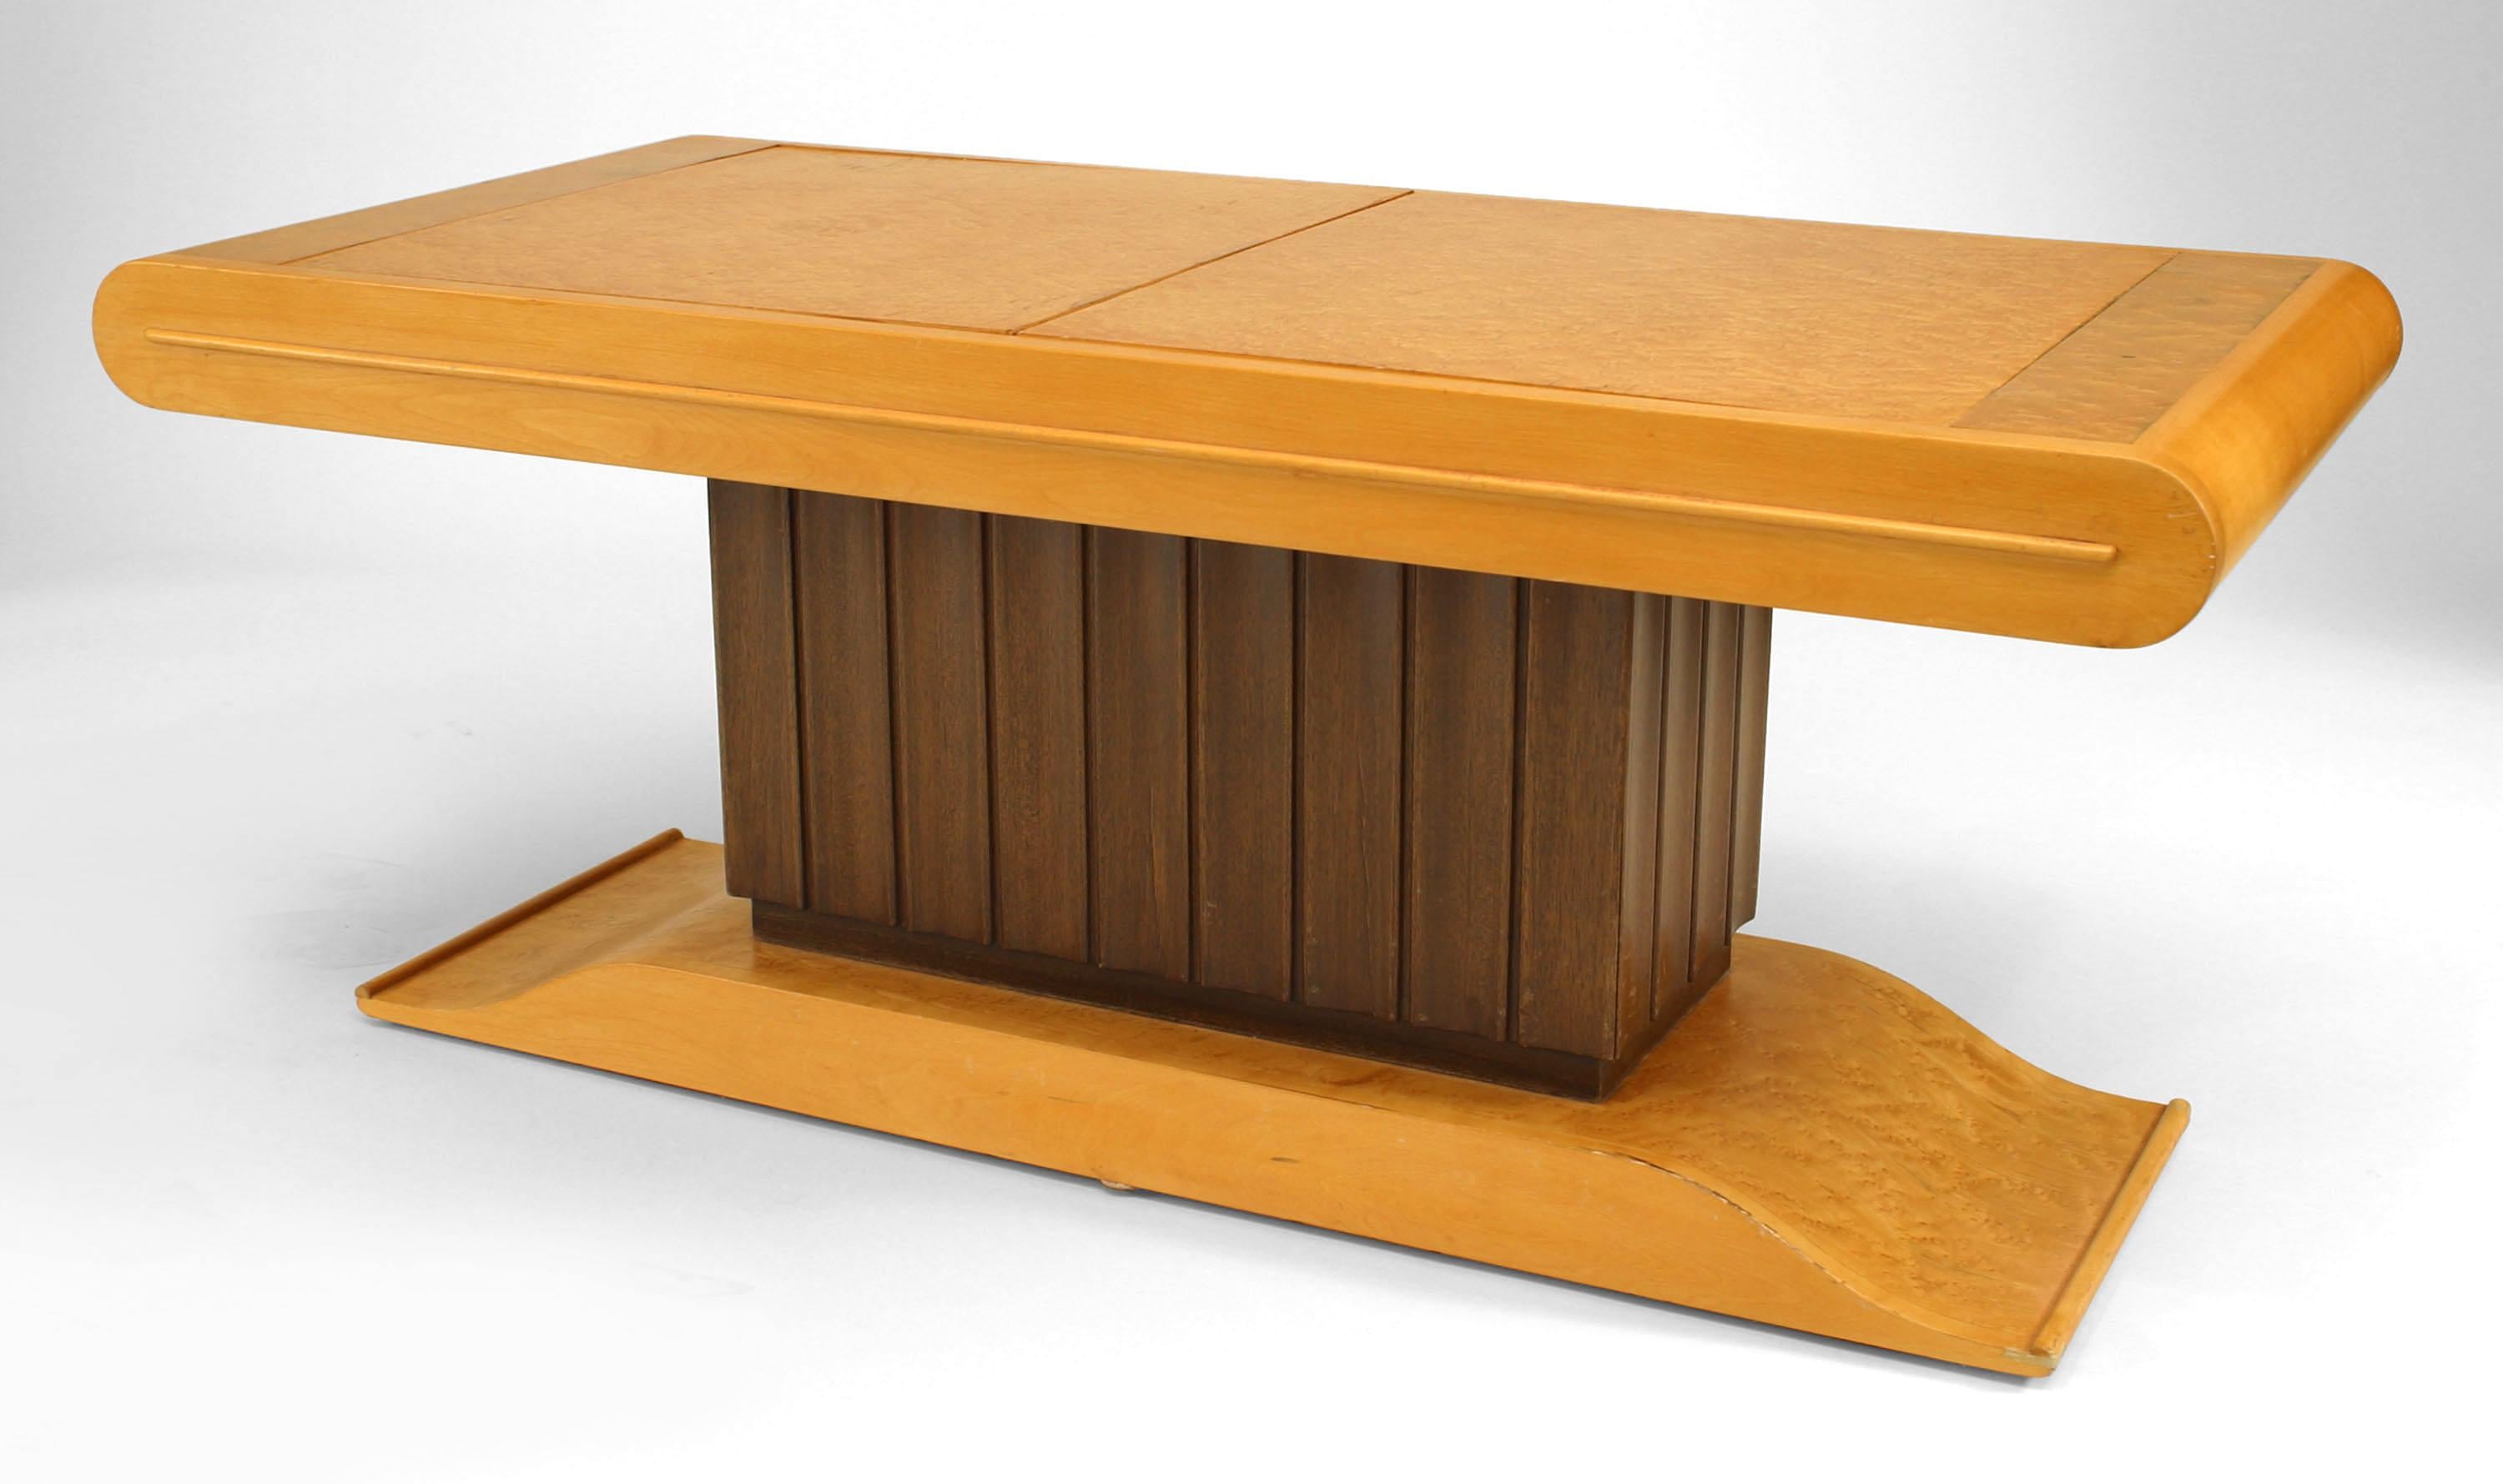 Table basse rectangulaire Art Déco italien (années 1930) en érable piqué avec deux portes supérieures qui s'ouvrent sur un piédestal central cannelé avec une finition teintée foncée qui contient un meuble de bar.
